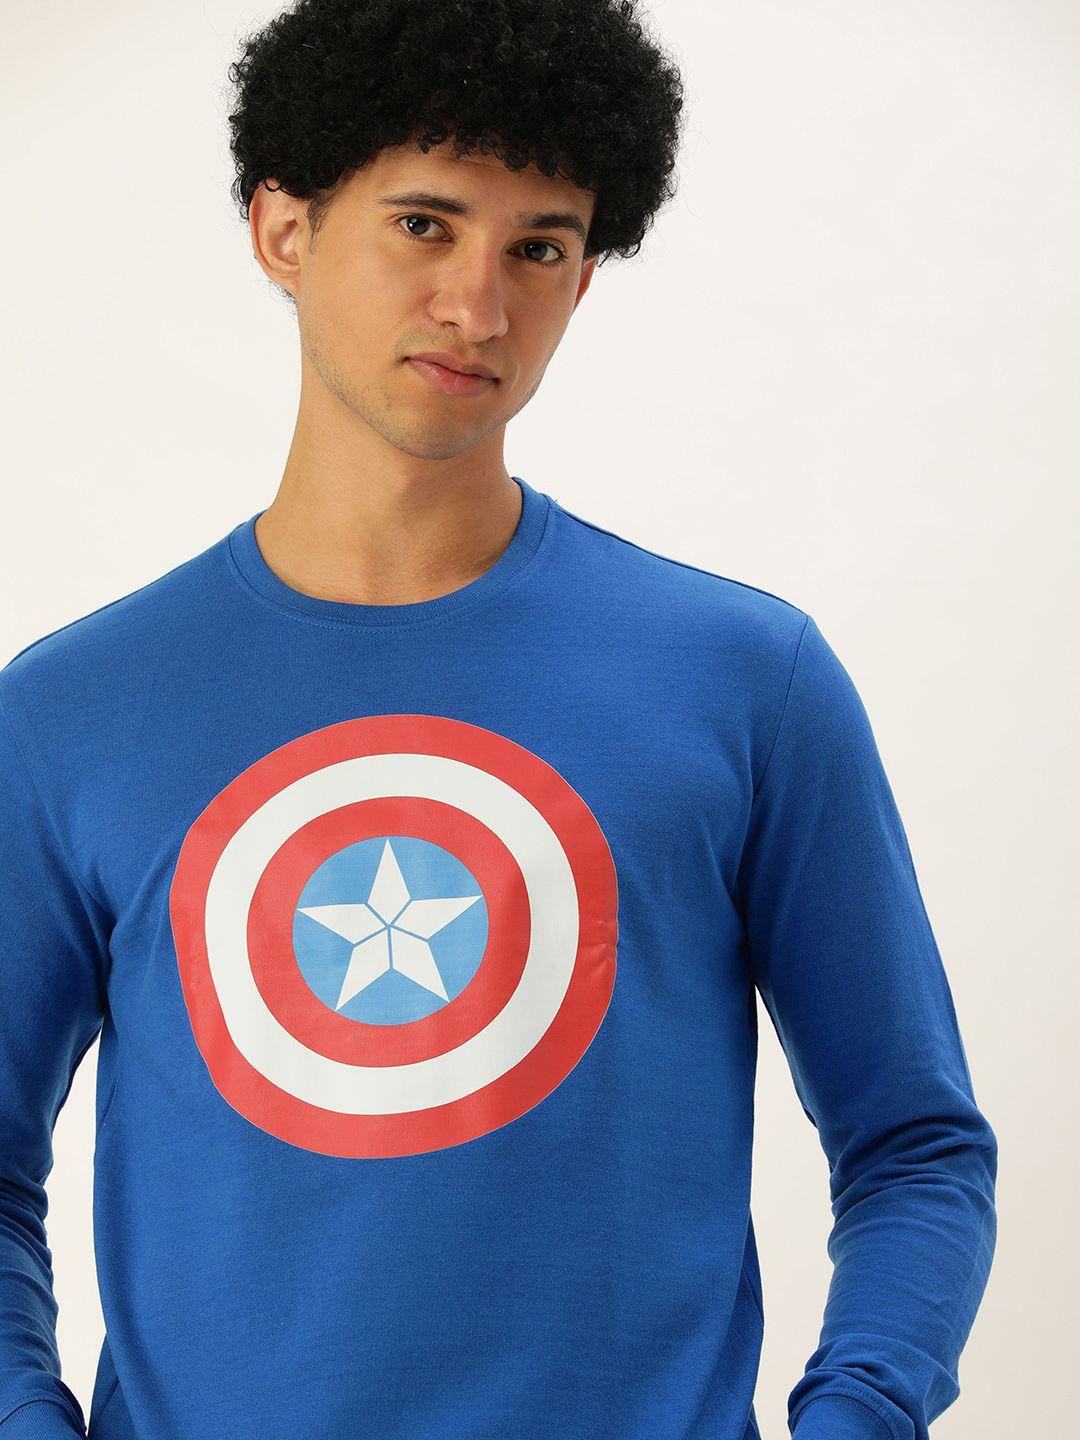 kook n keech men blue captain america printed sweatshirt